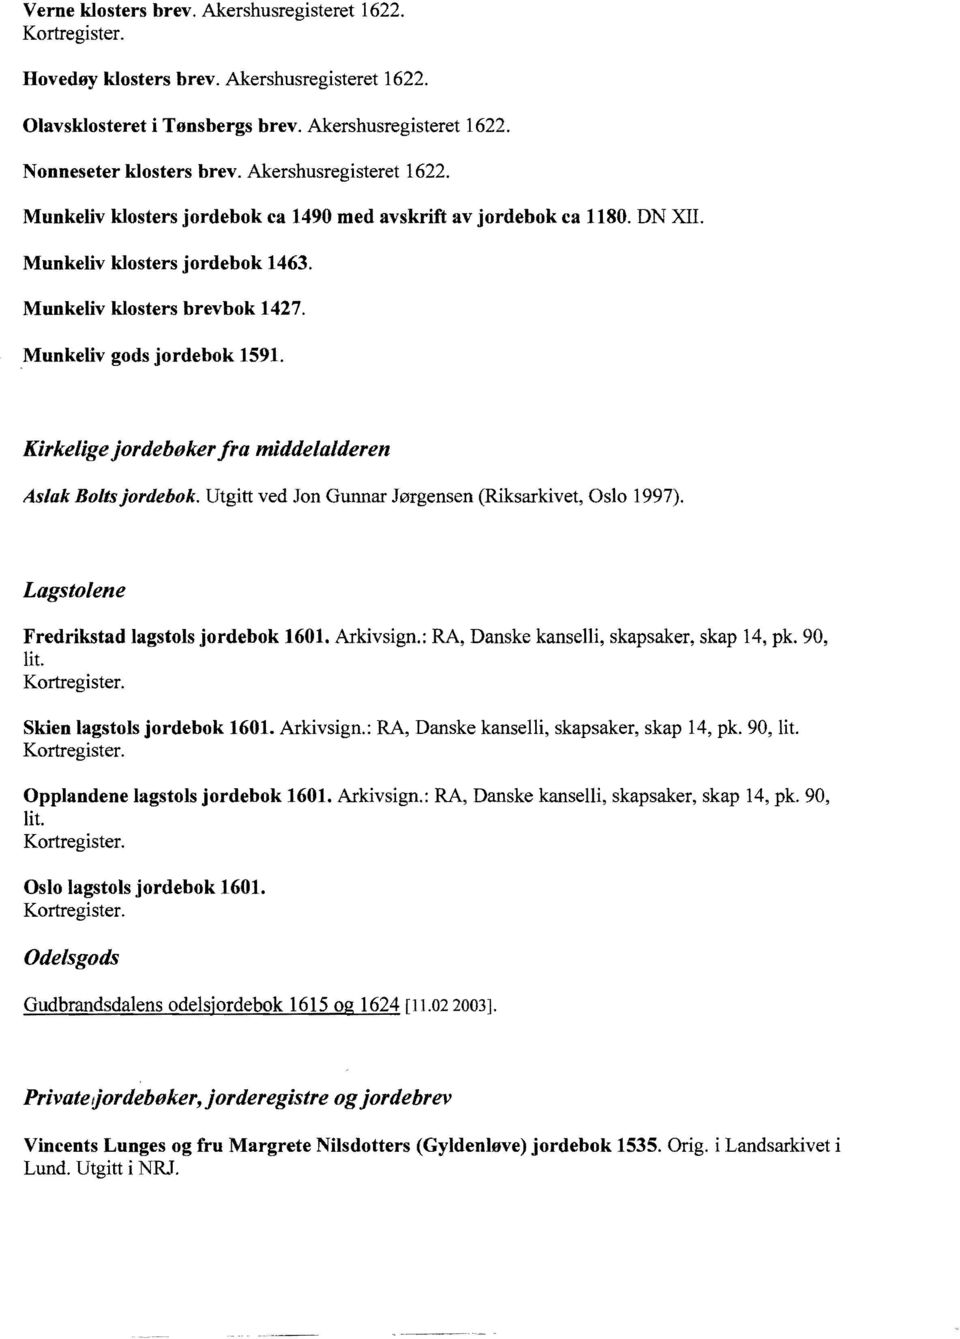 Kirkelige jordebøker fra middelalderen Aslak Boltsjordebok. Utgitt ved Jon Gunnar Jørgensen (Riksarkivet, Oslo 1997). Lagstolene Fredrikstad lagstols jordebok 1601. Arkivsign.